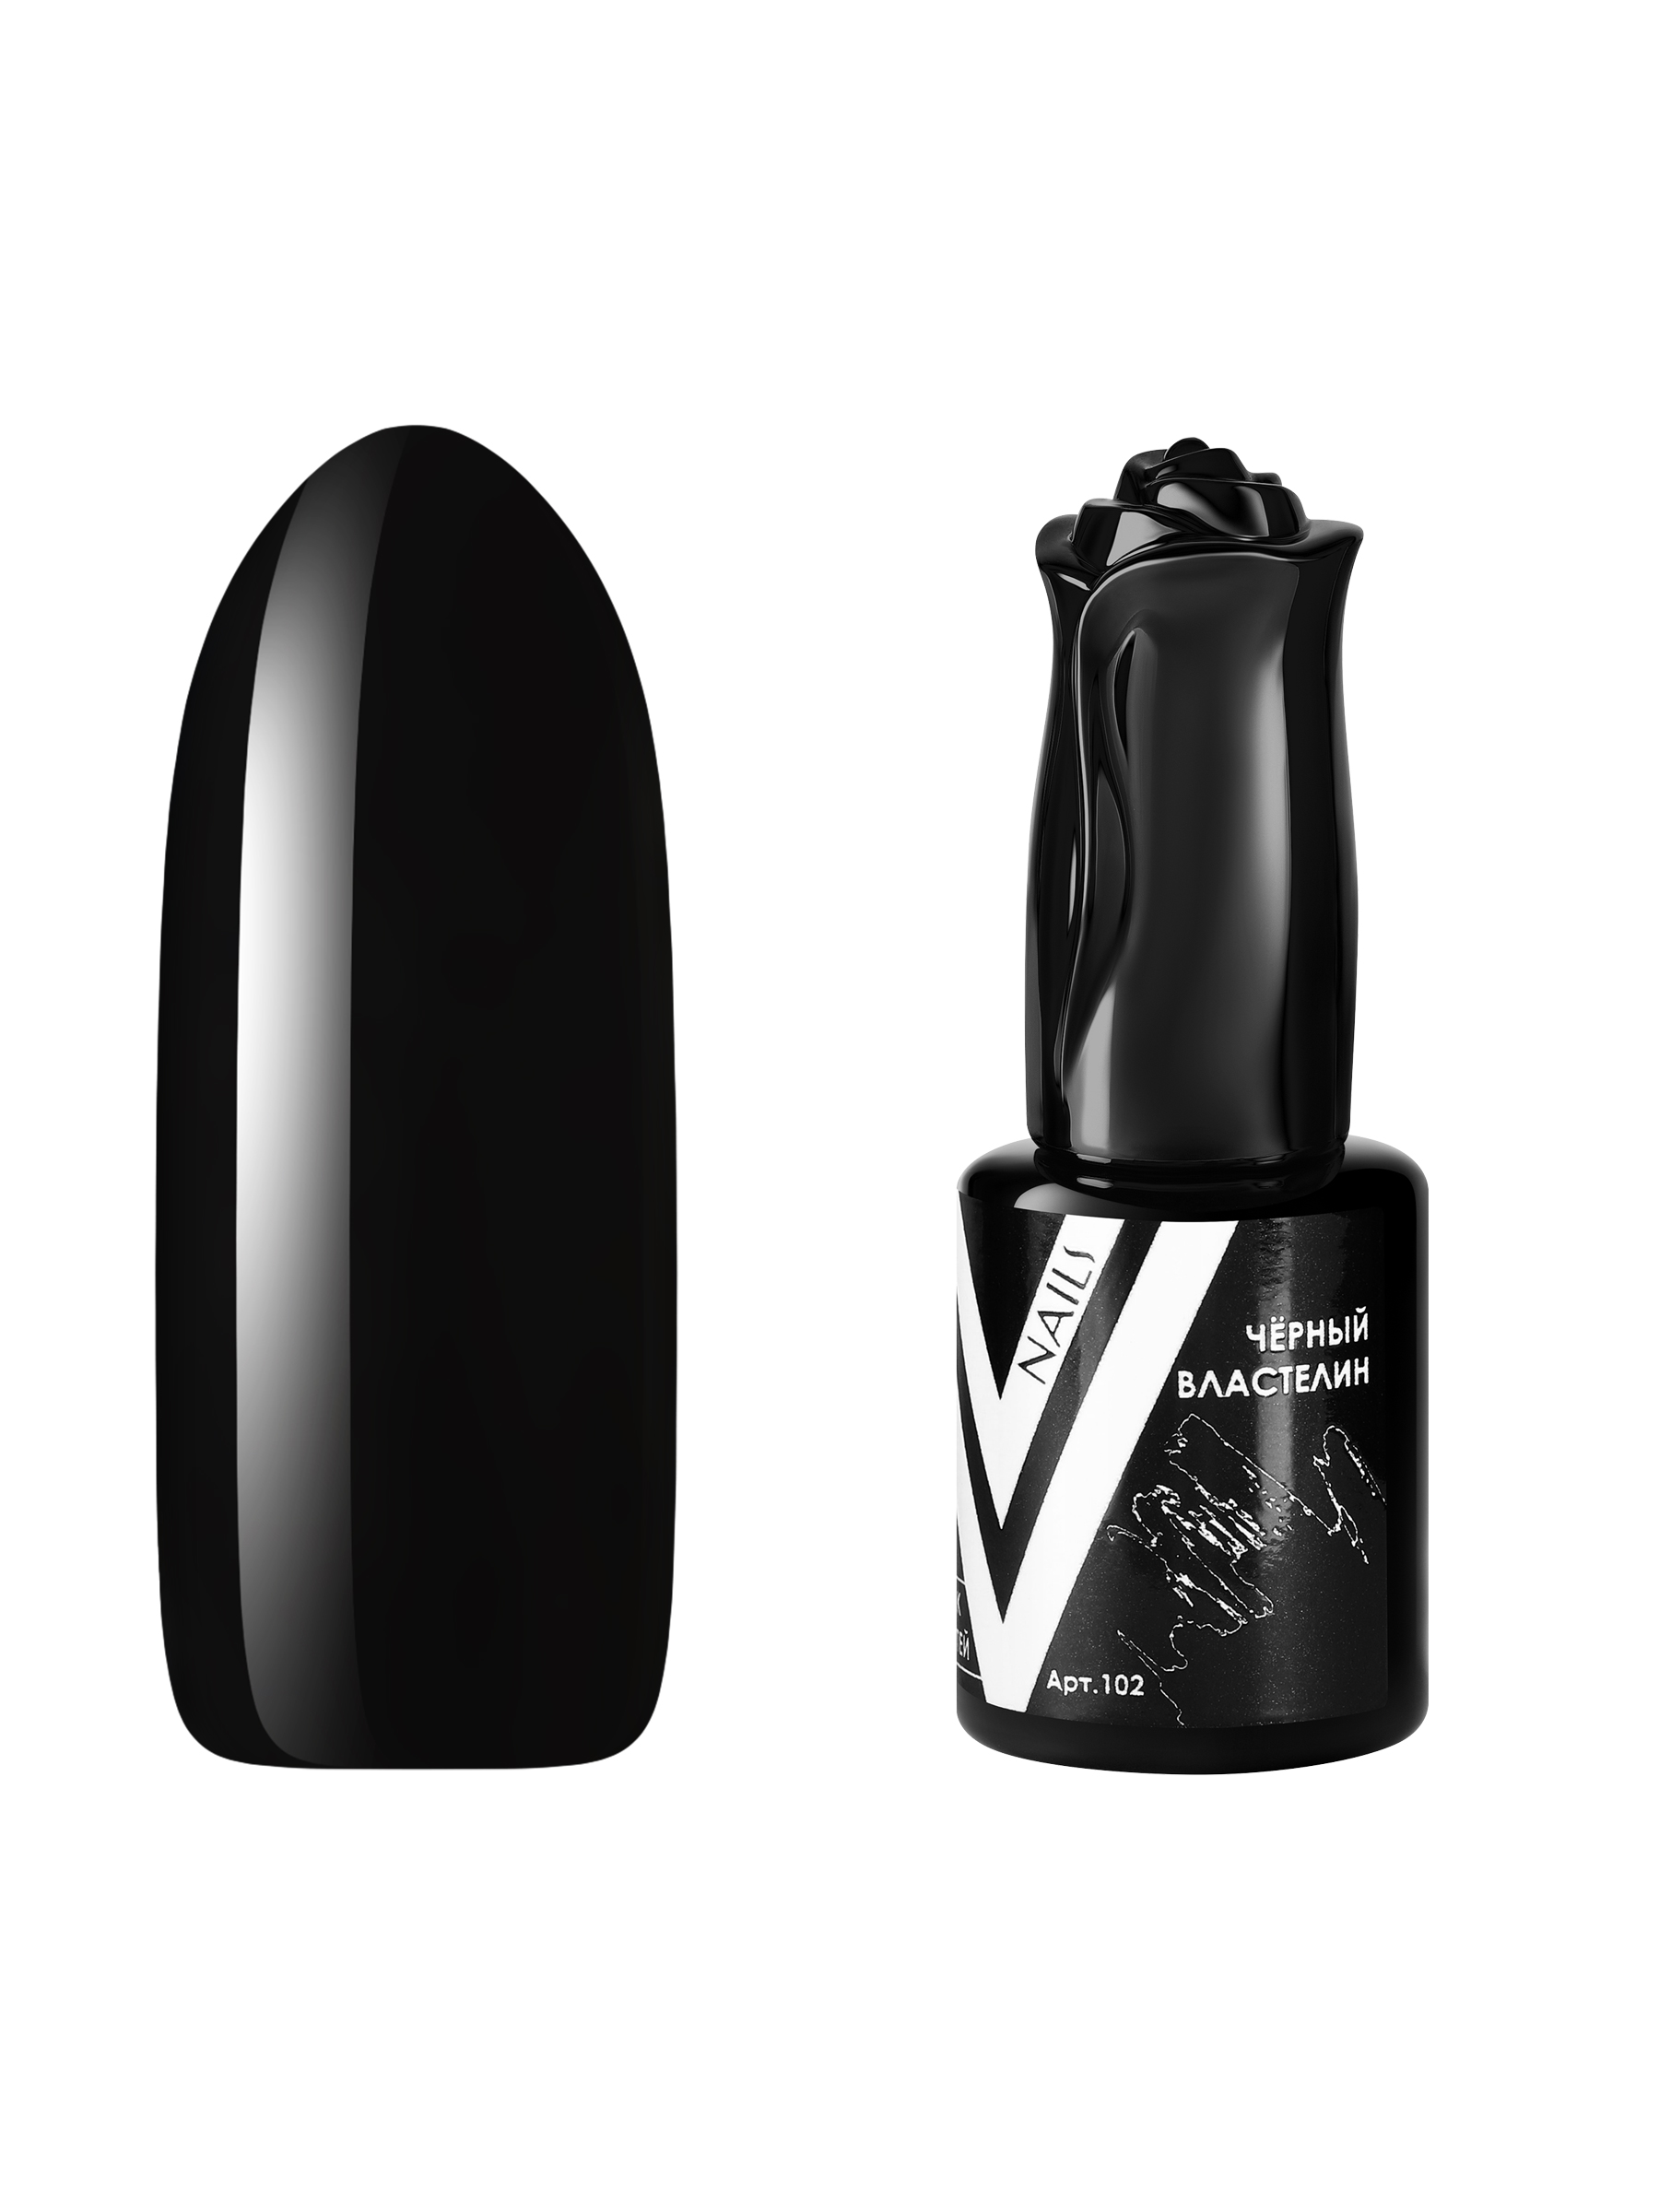 Гель-лак для ногтей Vogue Nails плотный самовыравнивающийся, темный, черный, 10 мл фотодерм cолнцезащитный крем гель m spf50 28546x темный оттенок 40 мл